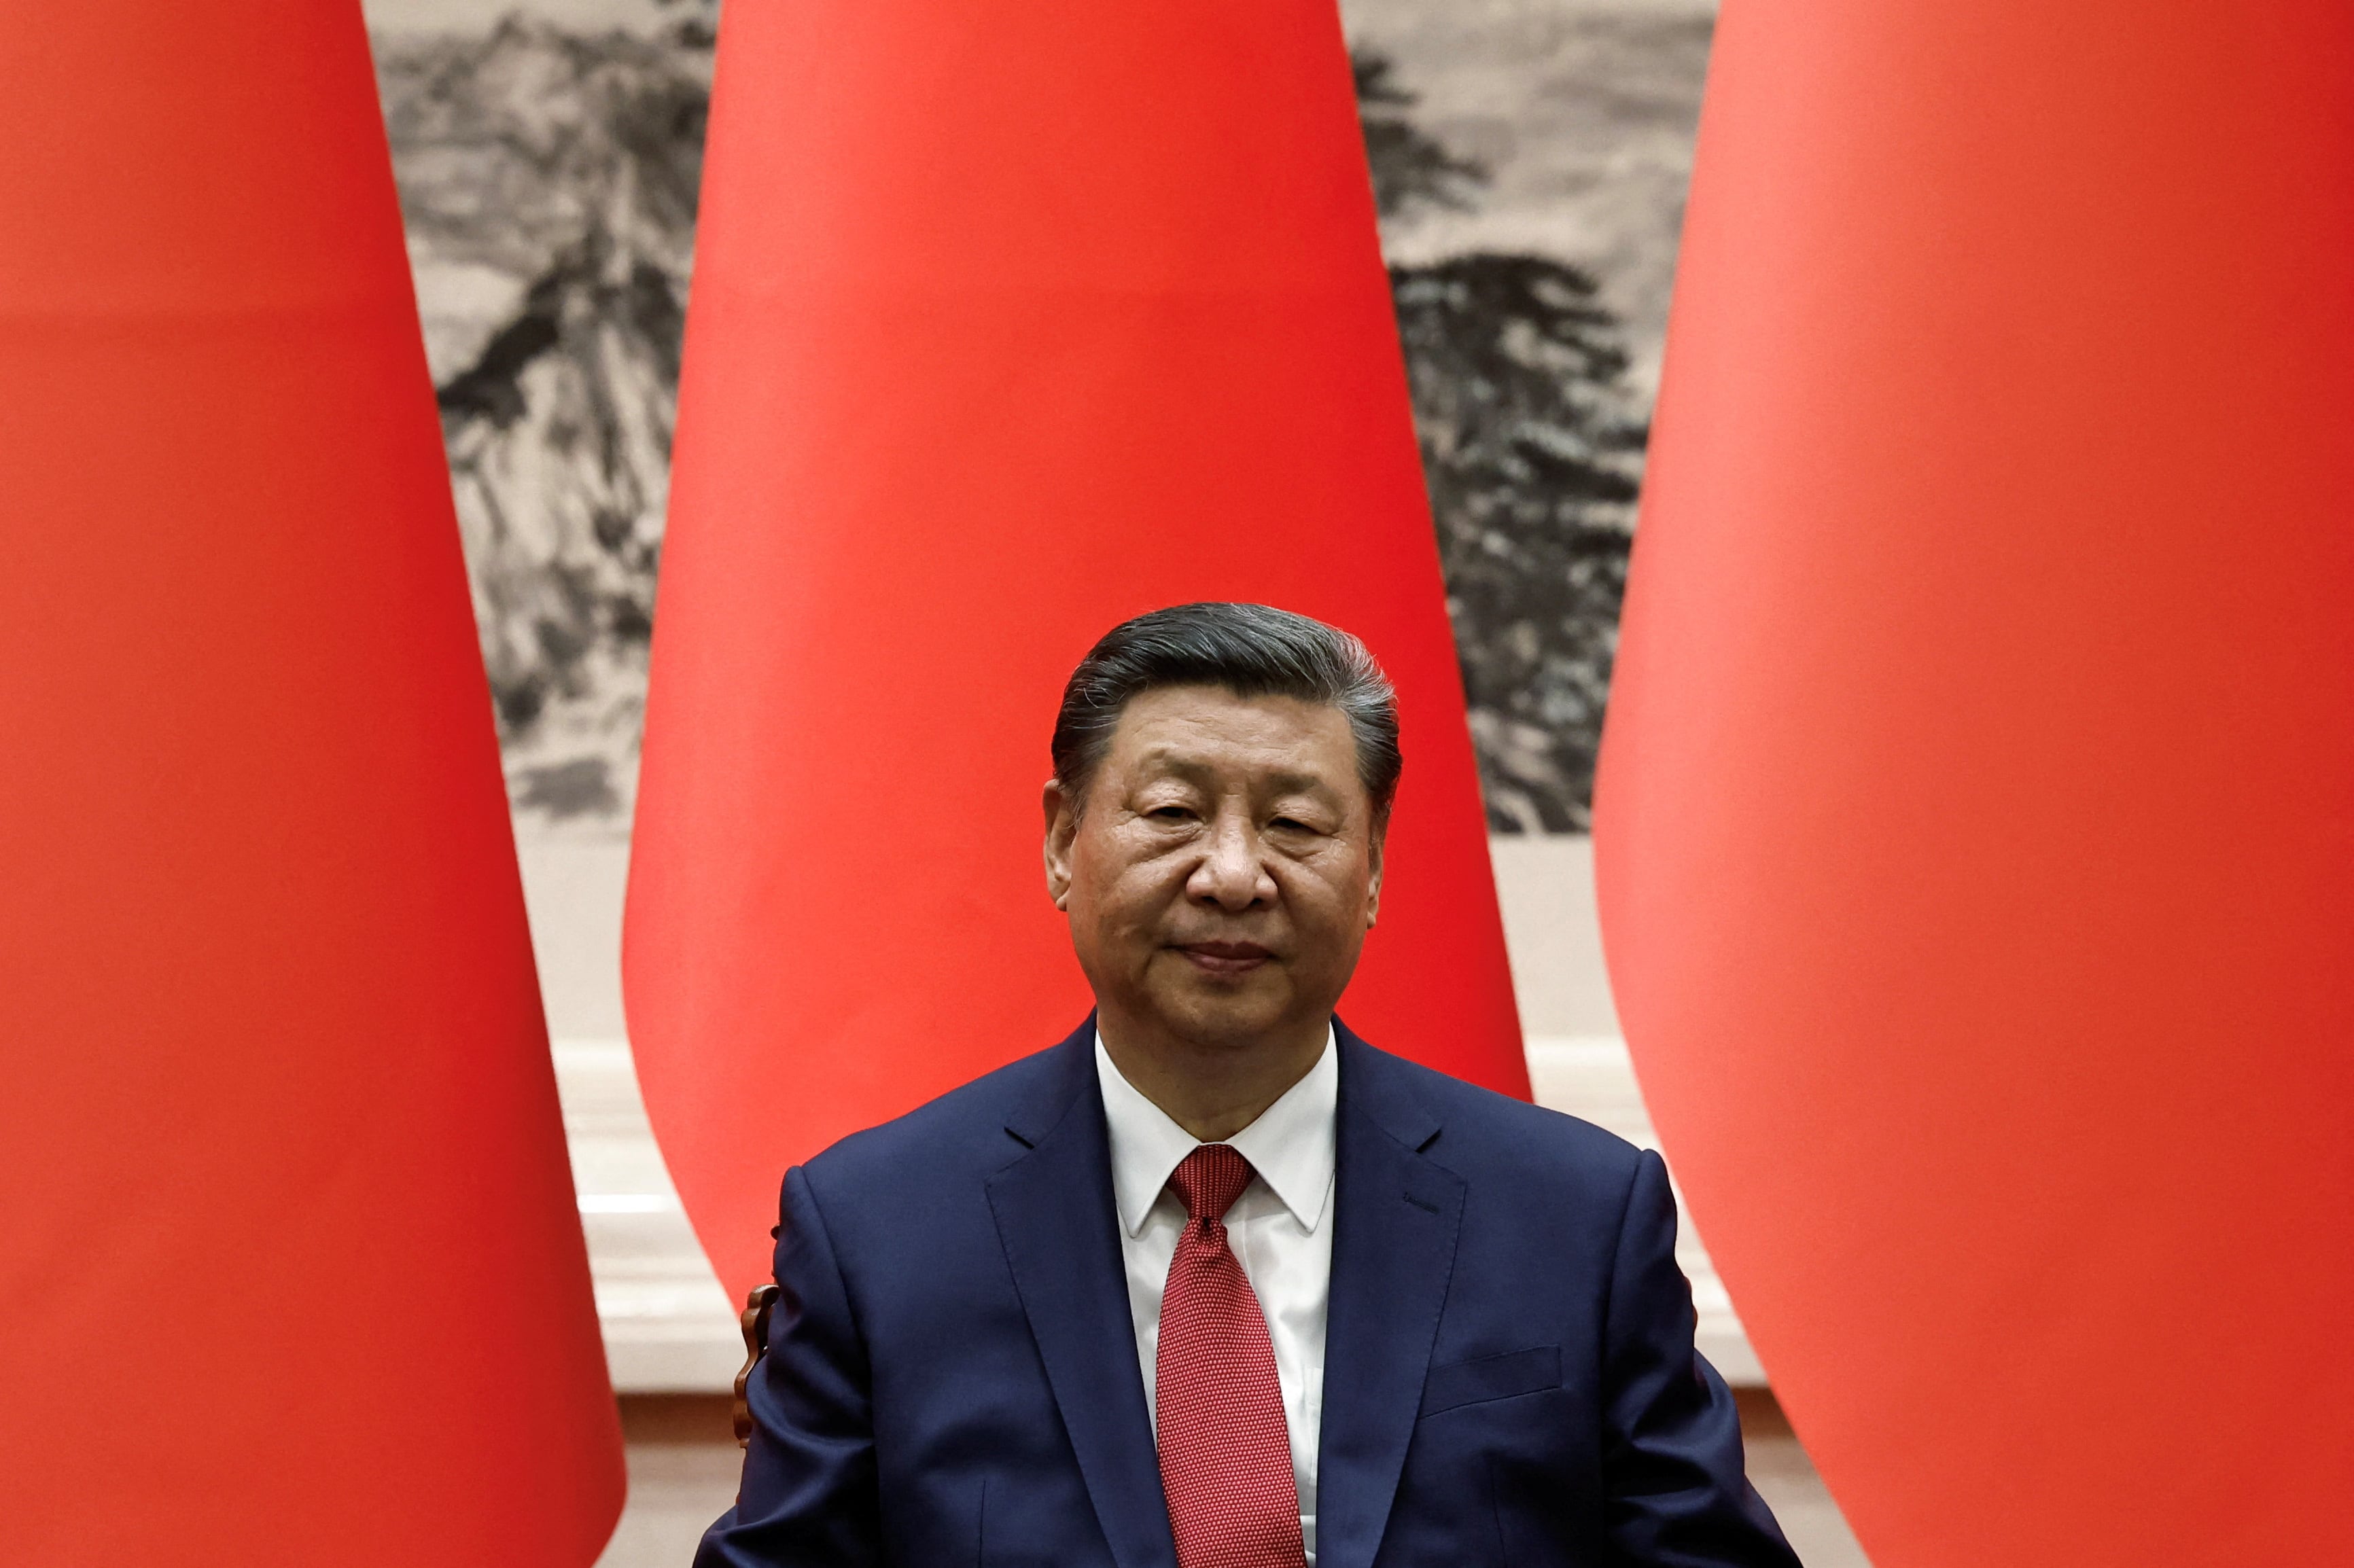 El régimen de Xi Jinping incrementa su influencia en Centroamérica (REUTERS/Tingshu Wang/Pool)